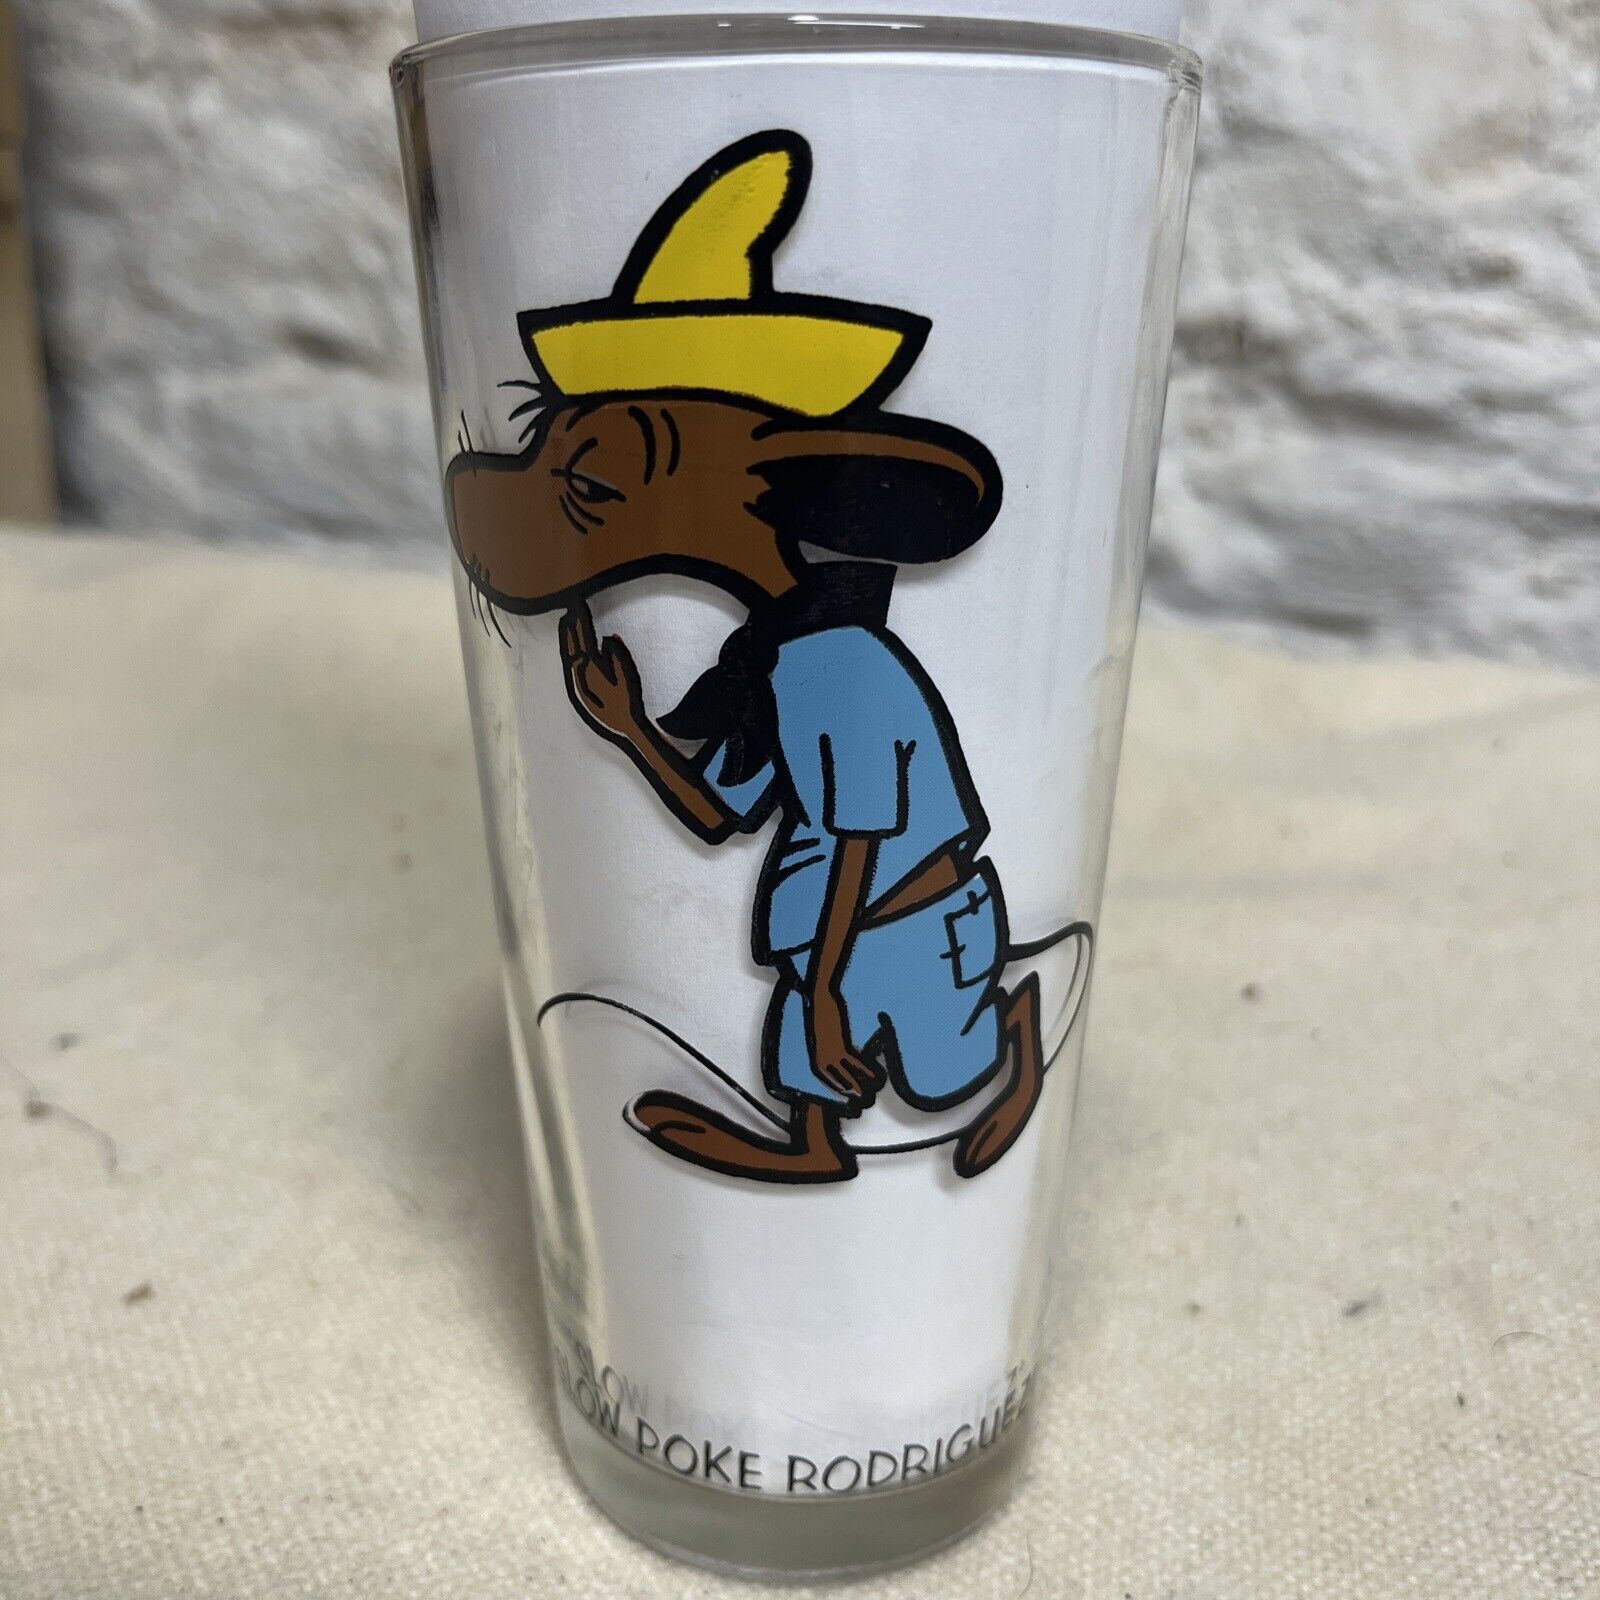 Rare Vintage 1973 Slow Poke Rodriguez Brockway Glass Looney Tunes Warner Bros